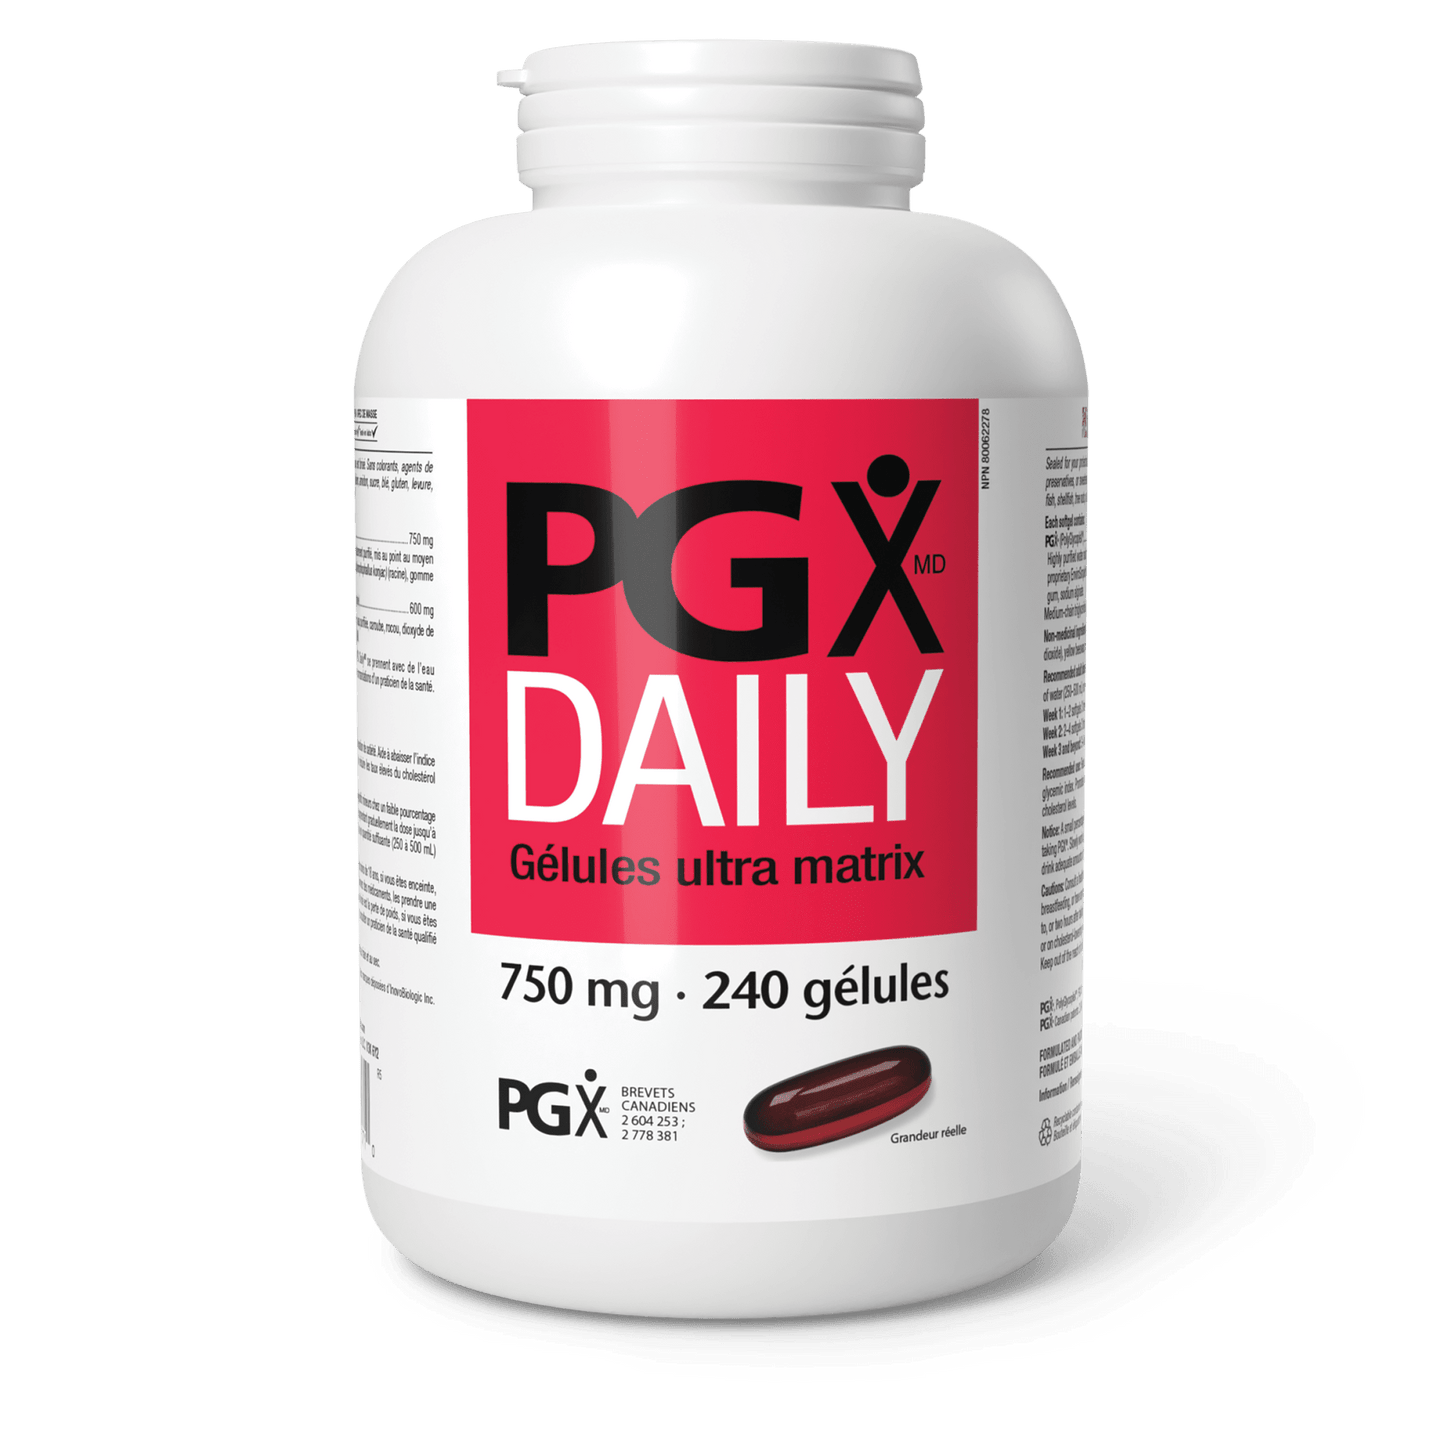 PGX Daily Gélules ultra matrix 750 mg, Natural Factors|v|image|3571